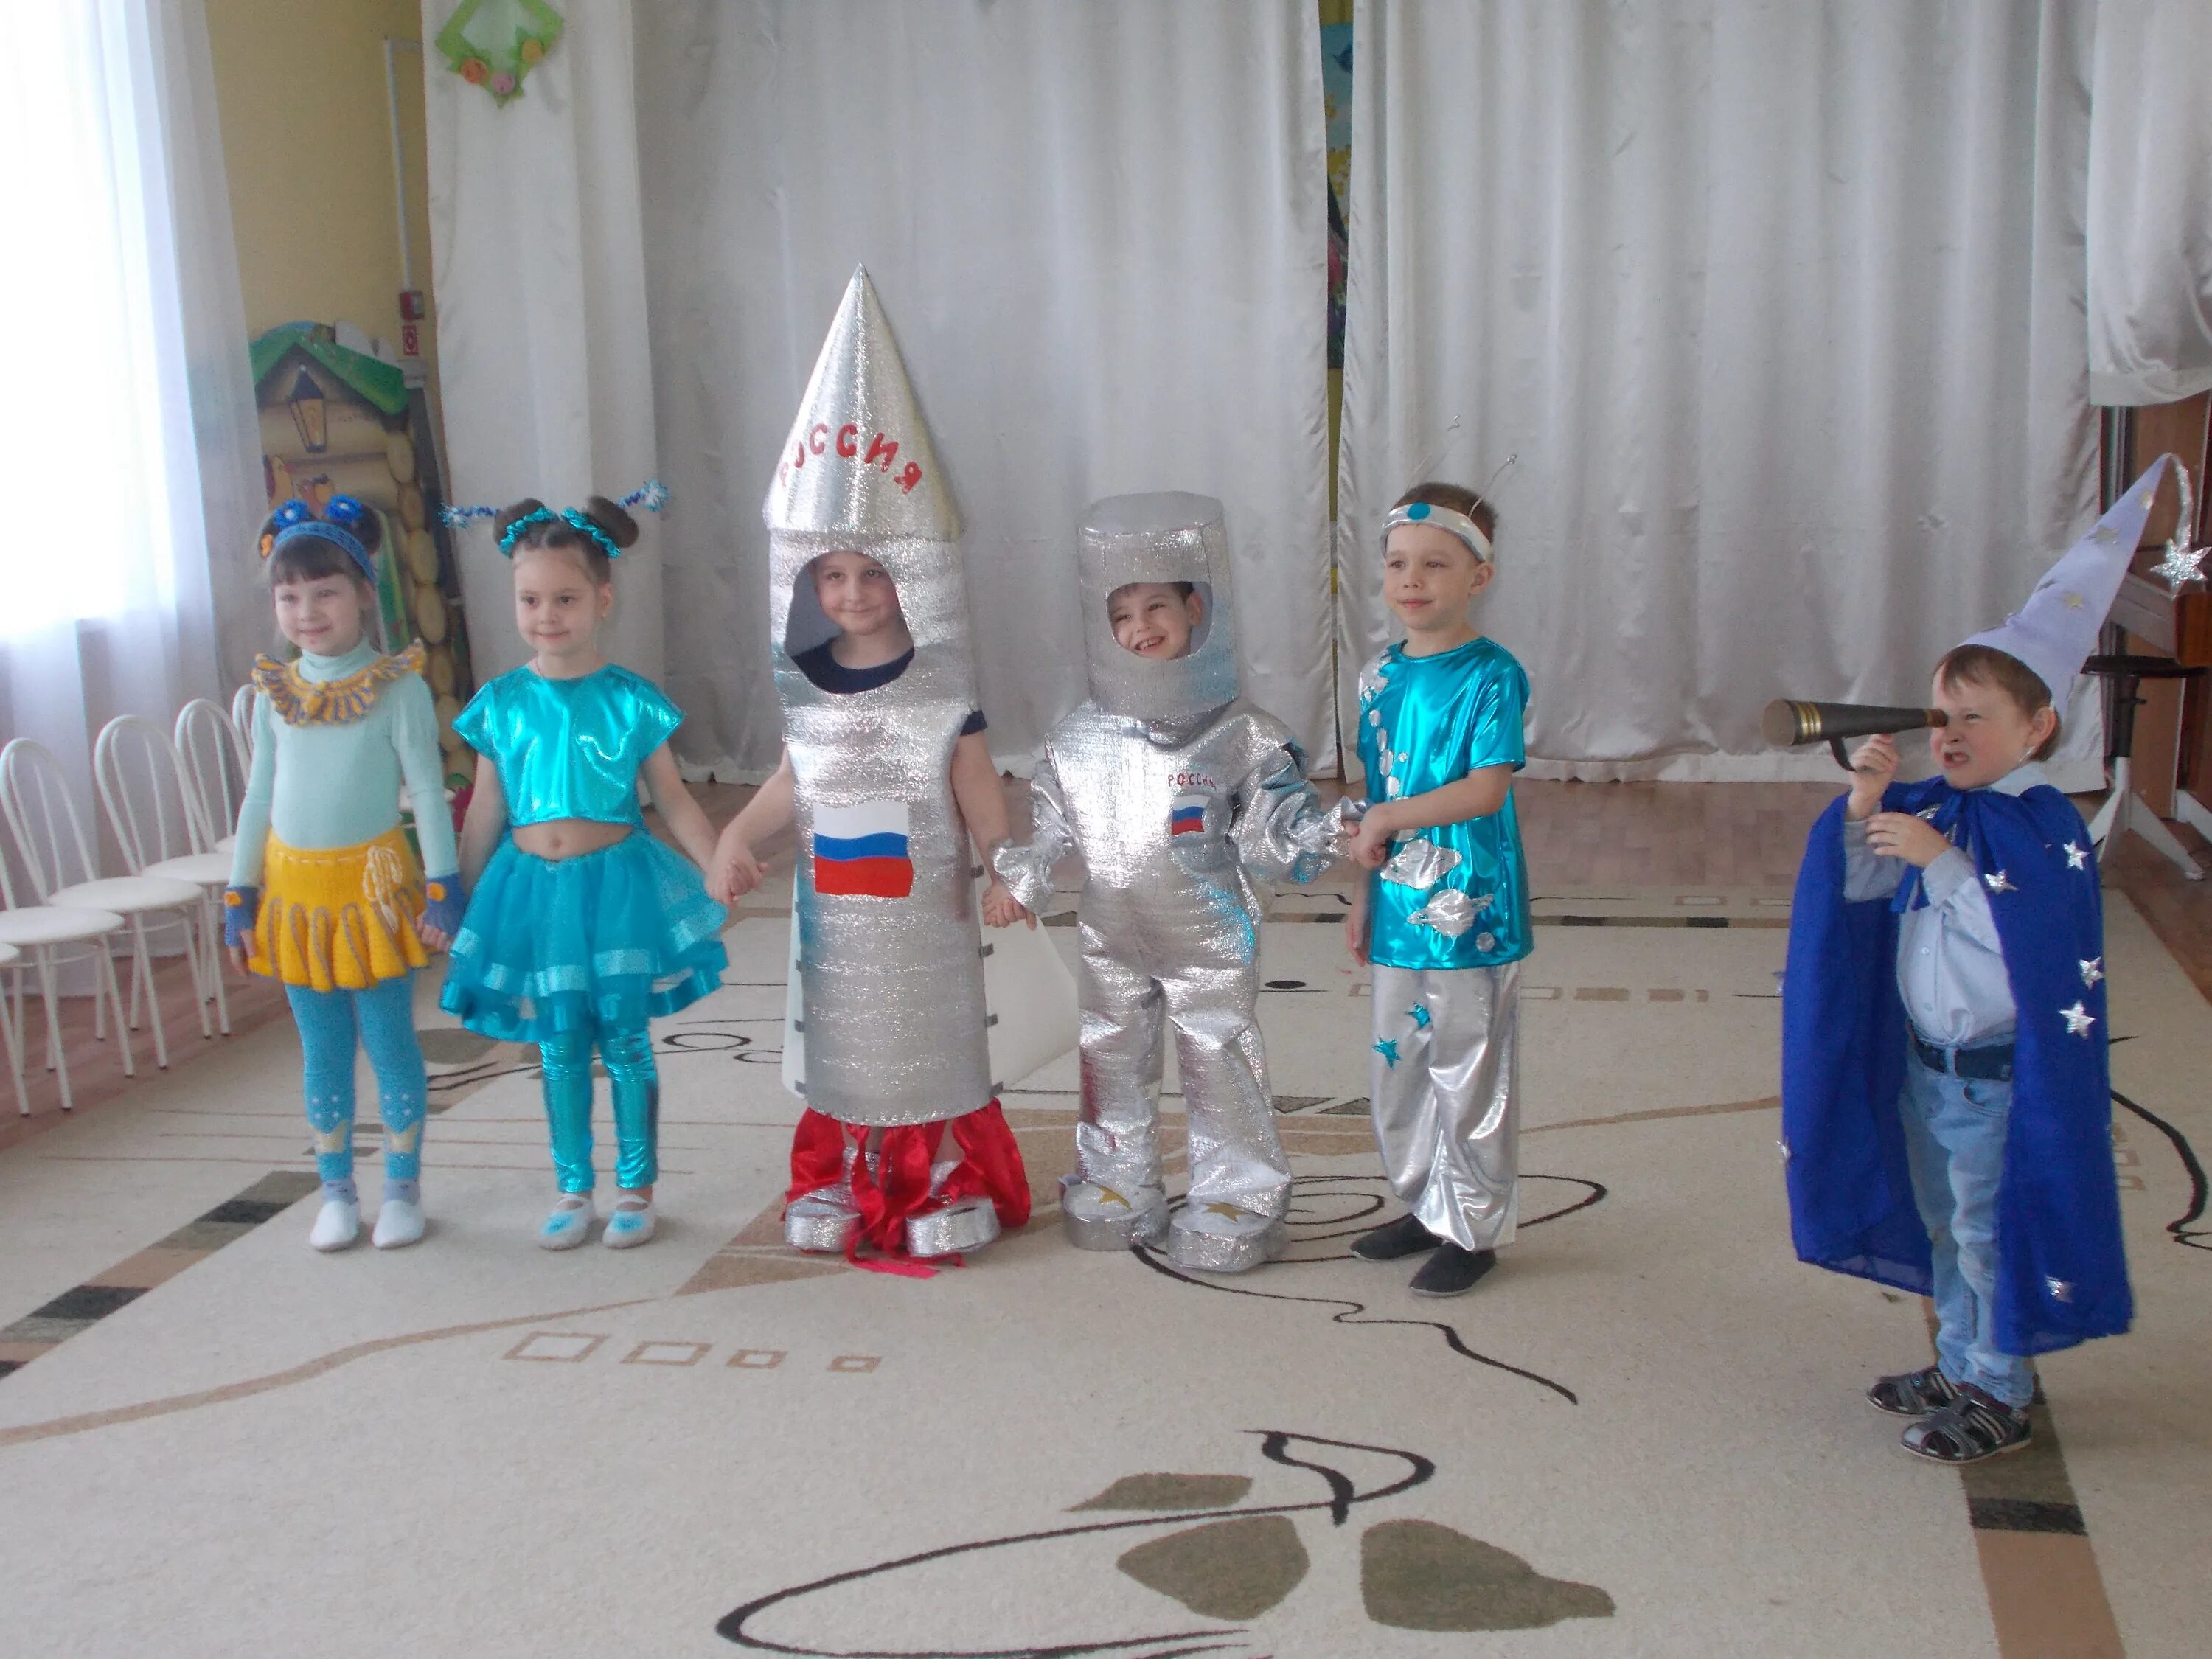 Костюм в сад ко дню космонавтики. Костюм ко Дню космонавтики в детский сад. Космические костюмы для детей. День космонавтики для детей в детском саду костюмы. Конкурс космических костюмов в детском саду.